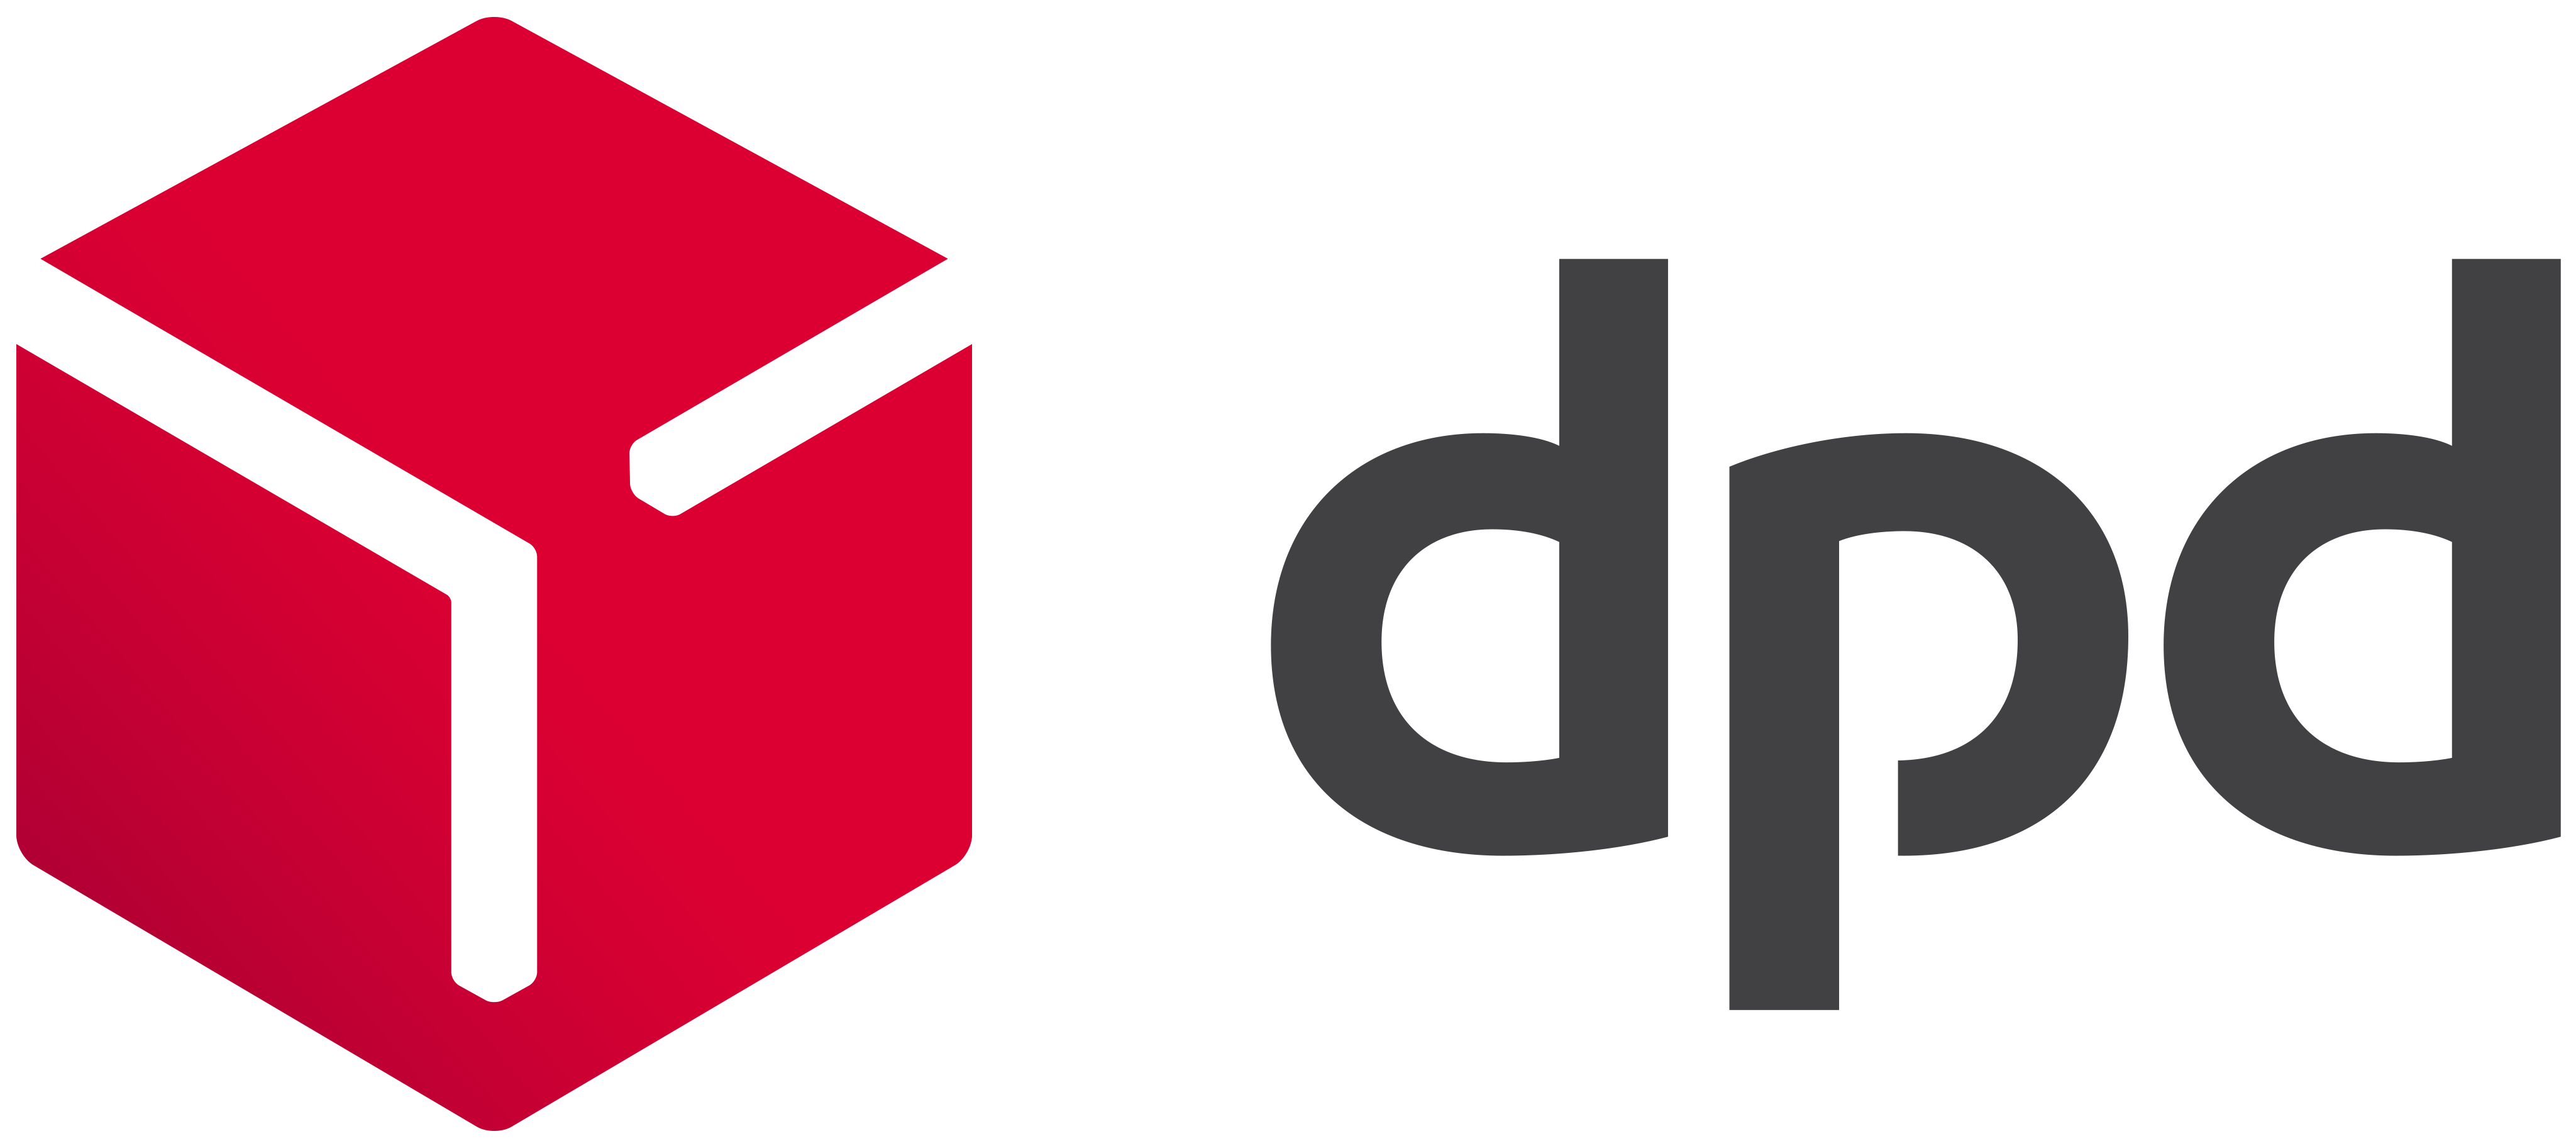 DPD (UK) - Media Assets